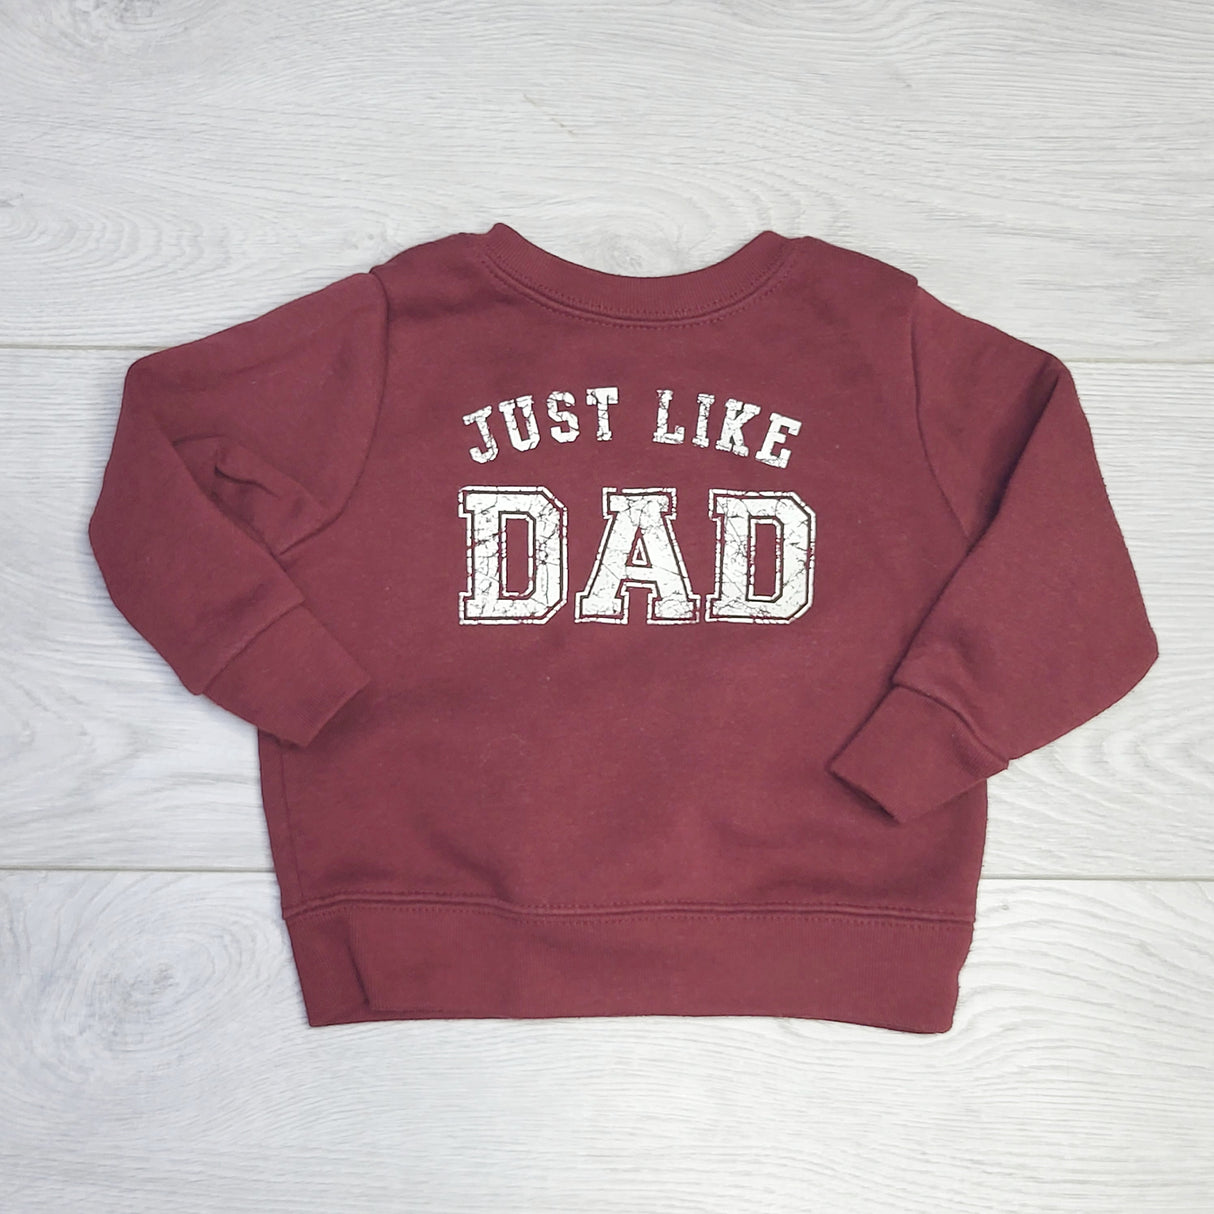 CRTH1 - Garanimals burgundy "Just Like Dad" sweatshirt. Size 6-9 months